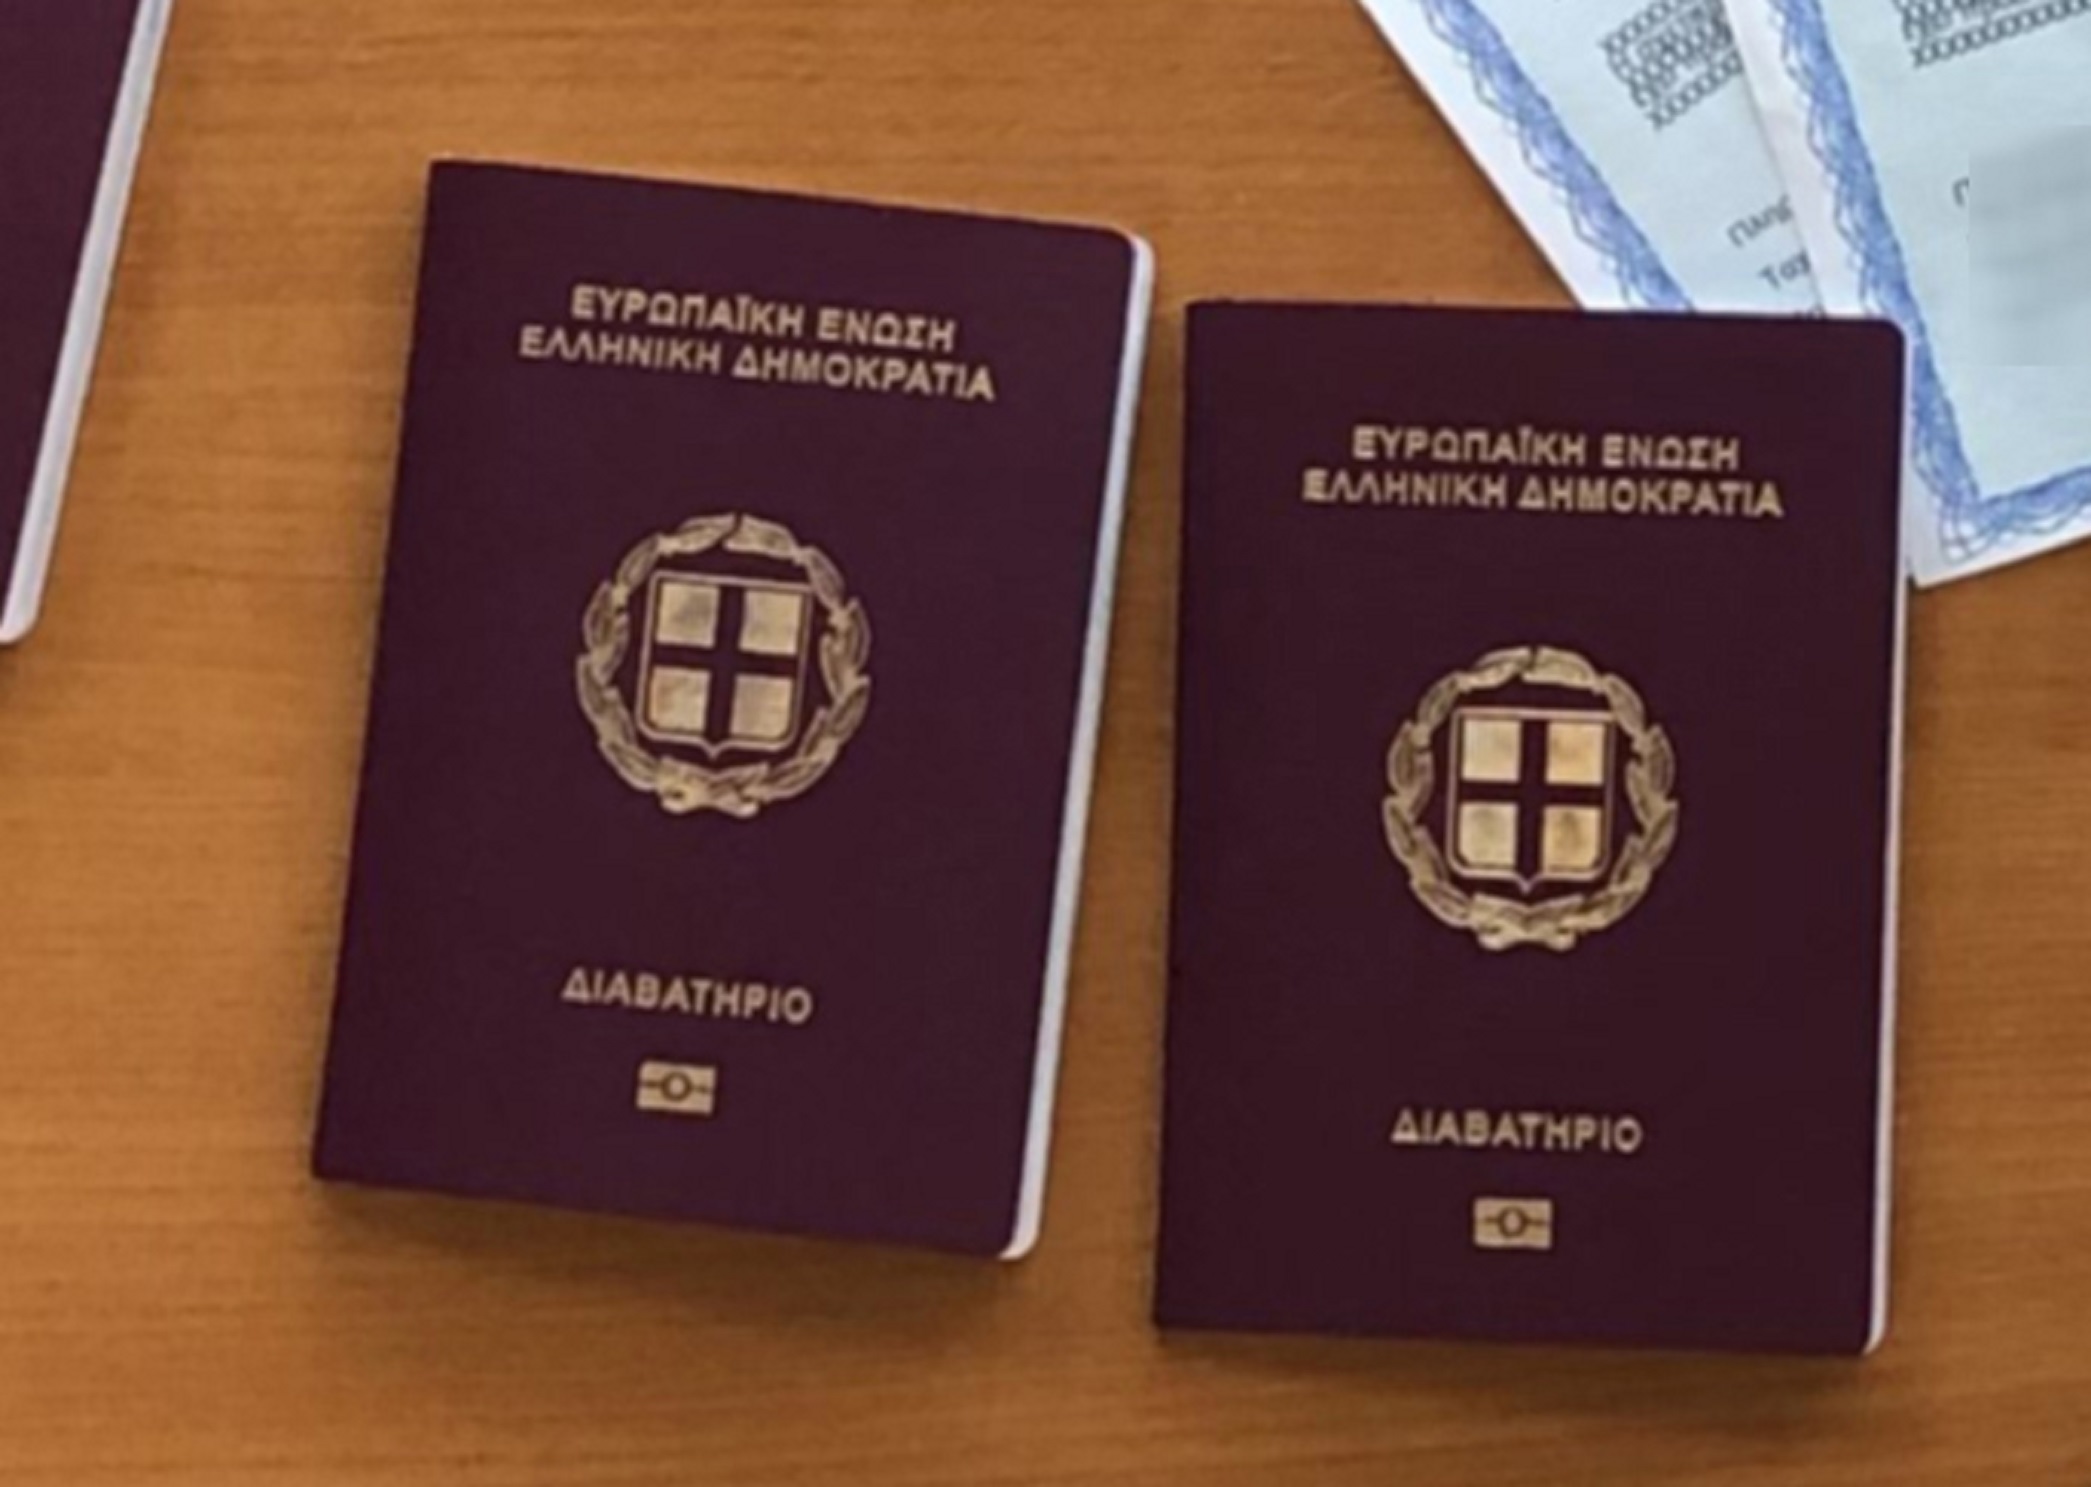 Διαβατήρια: Αλλάζουν οι προϋποθέσεις χορήγησης – Ποιοι δεν μπορούν να βγάλουν